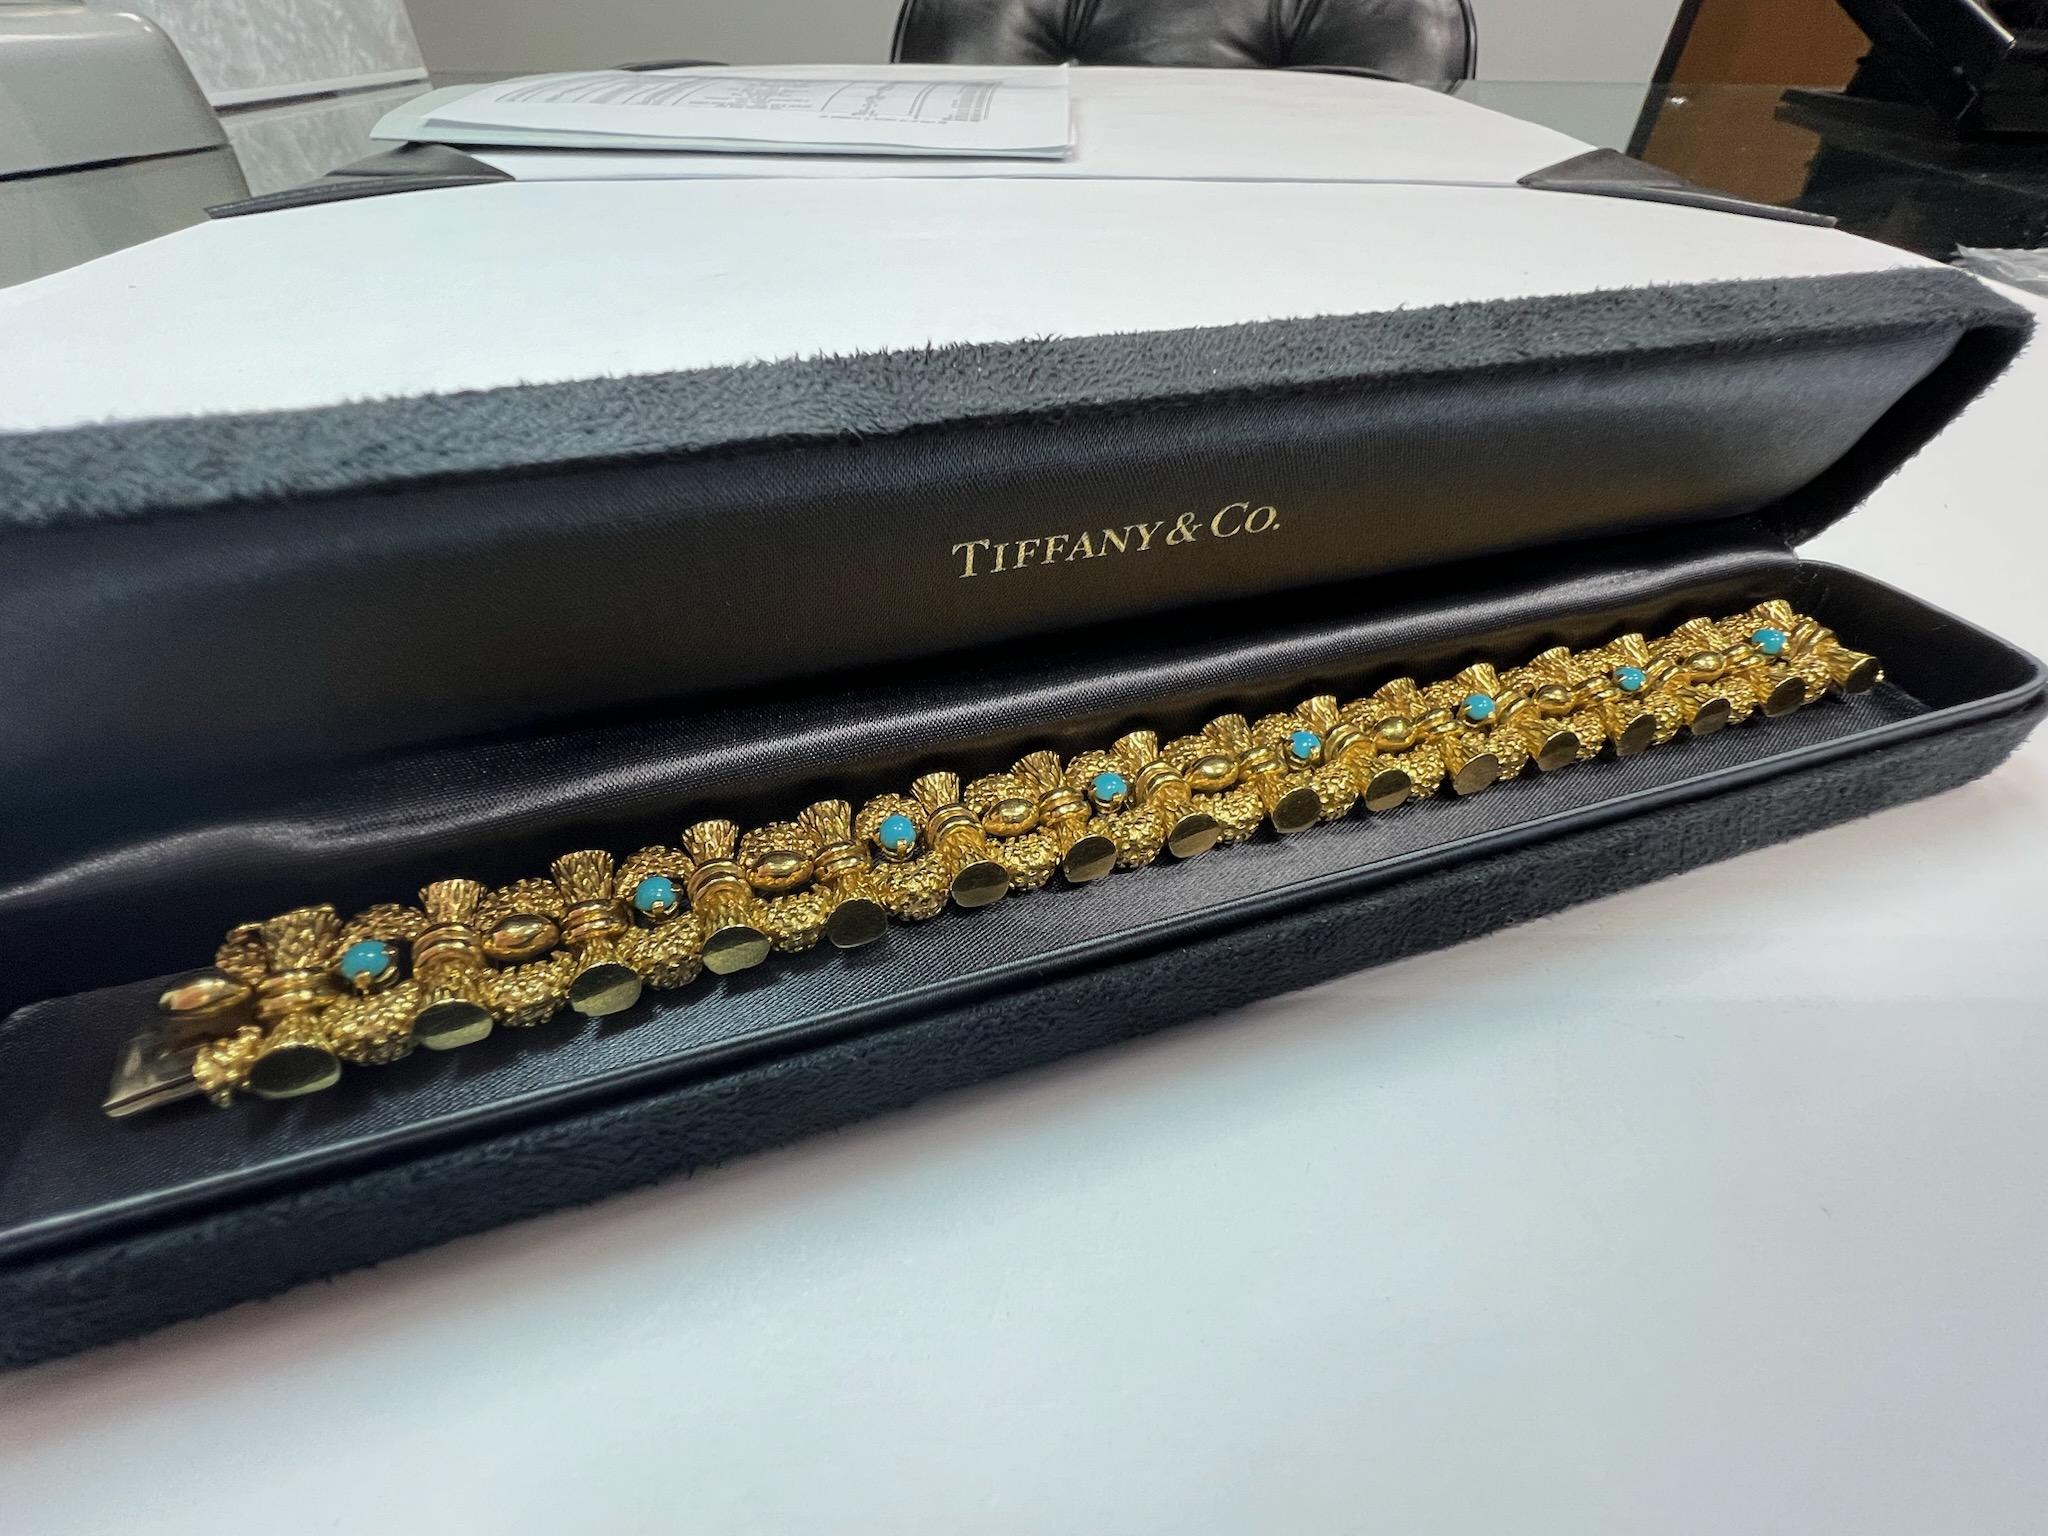 Magnifique bracelet TIFFANY&CO en turquoise et or jaune 18 carats, circa 1960.

Le poids est de 87 grammes, la longueur de 7 pouces, la largeur d'un peu plus de 1/2 pouce (15mm). 

Pas de documents originaux.